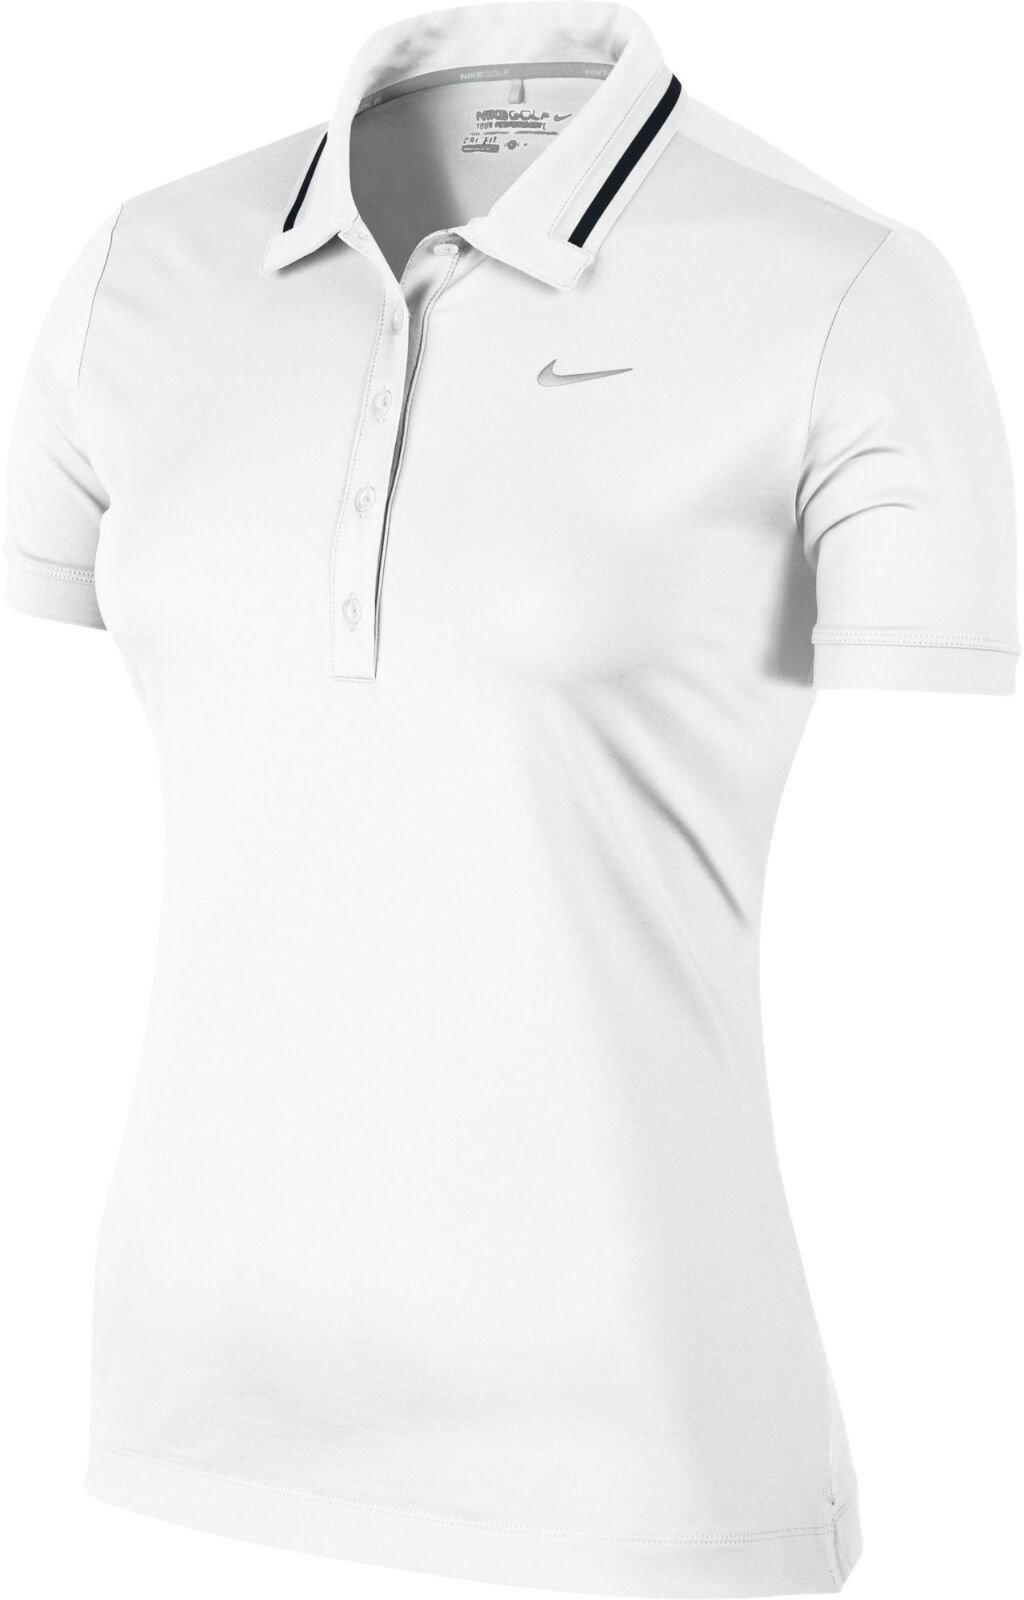 Camiseta polo Nike Icon Swoosh Tech Womens Polo Shirt White/Metallic Silver XL